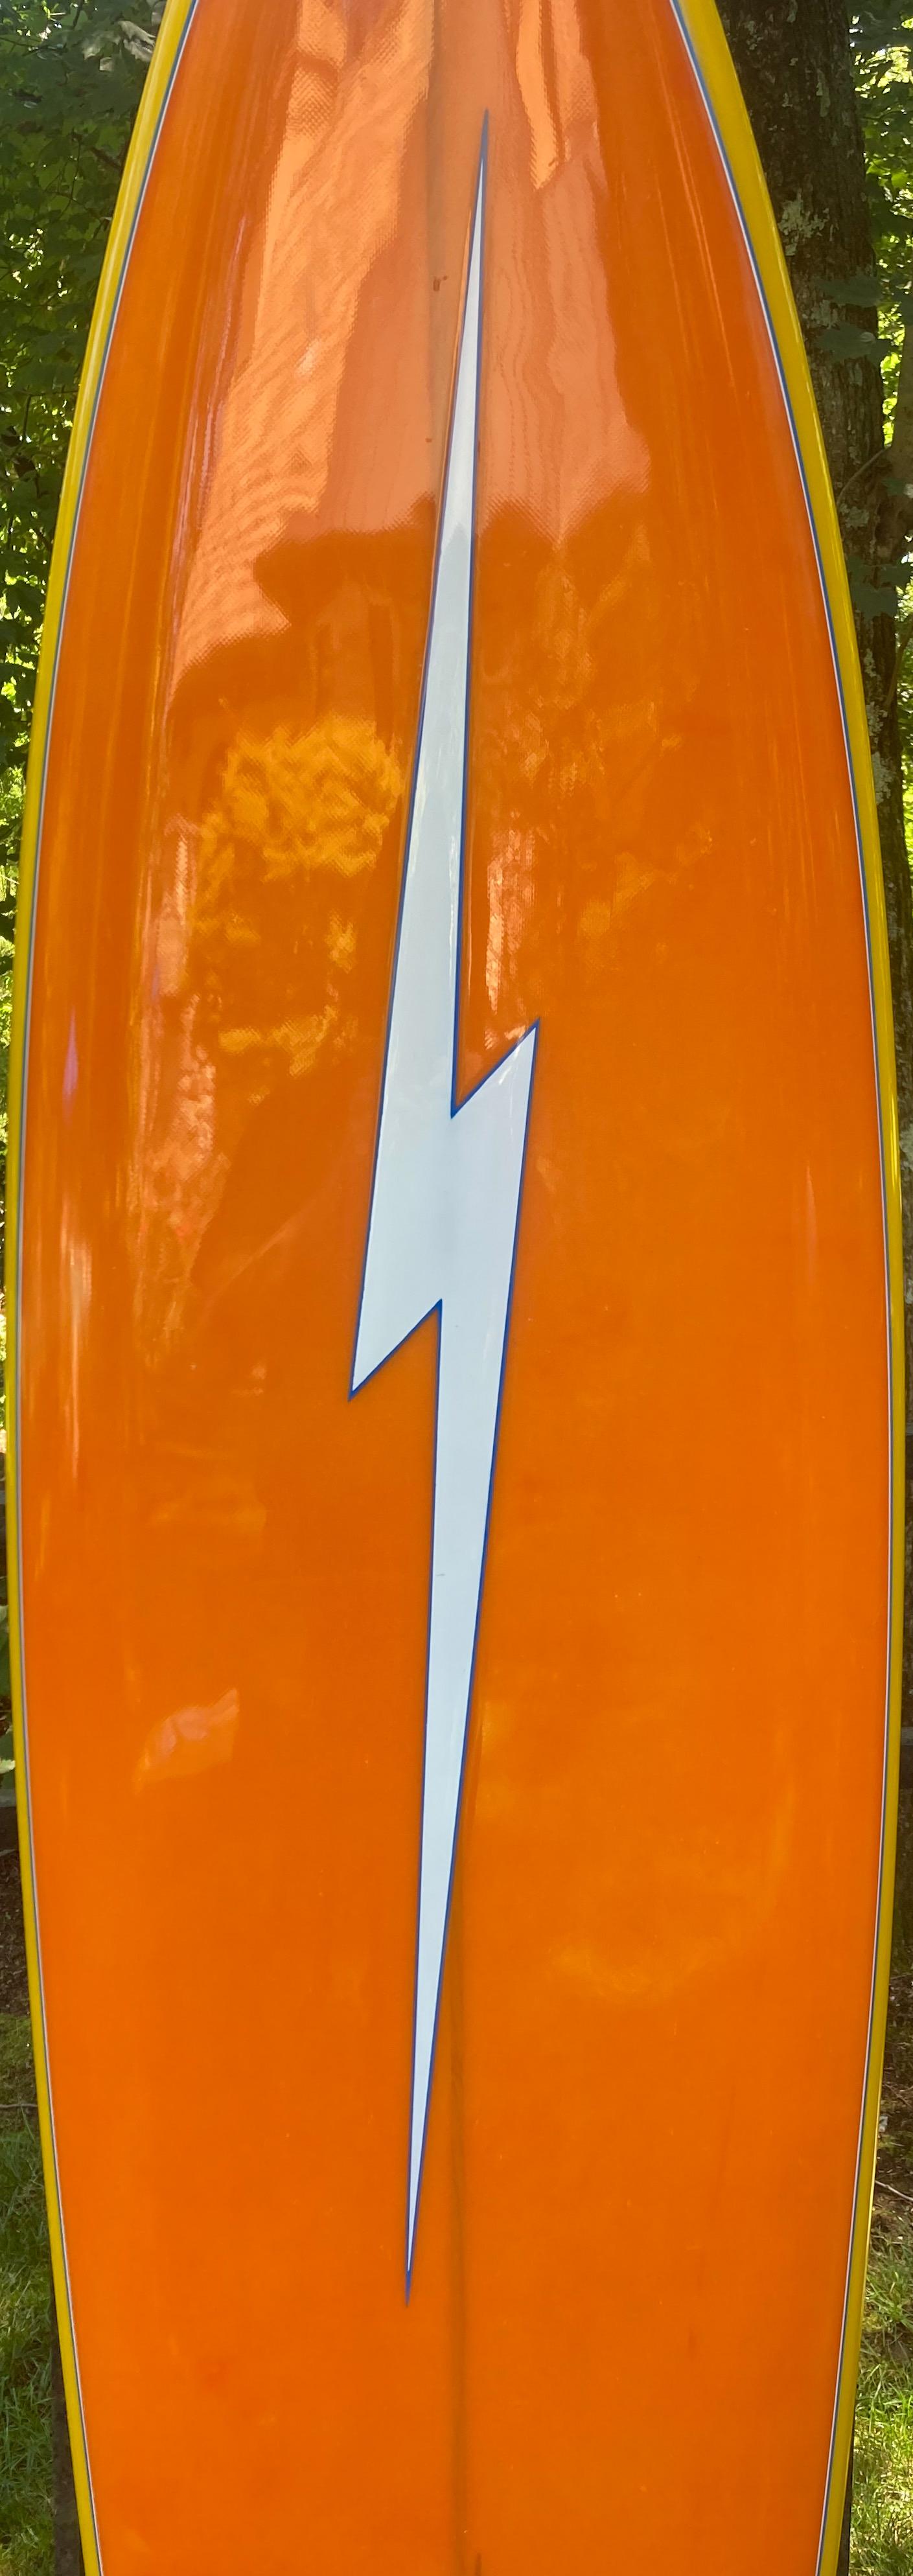 1976 lightning bolt surfboard